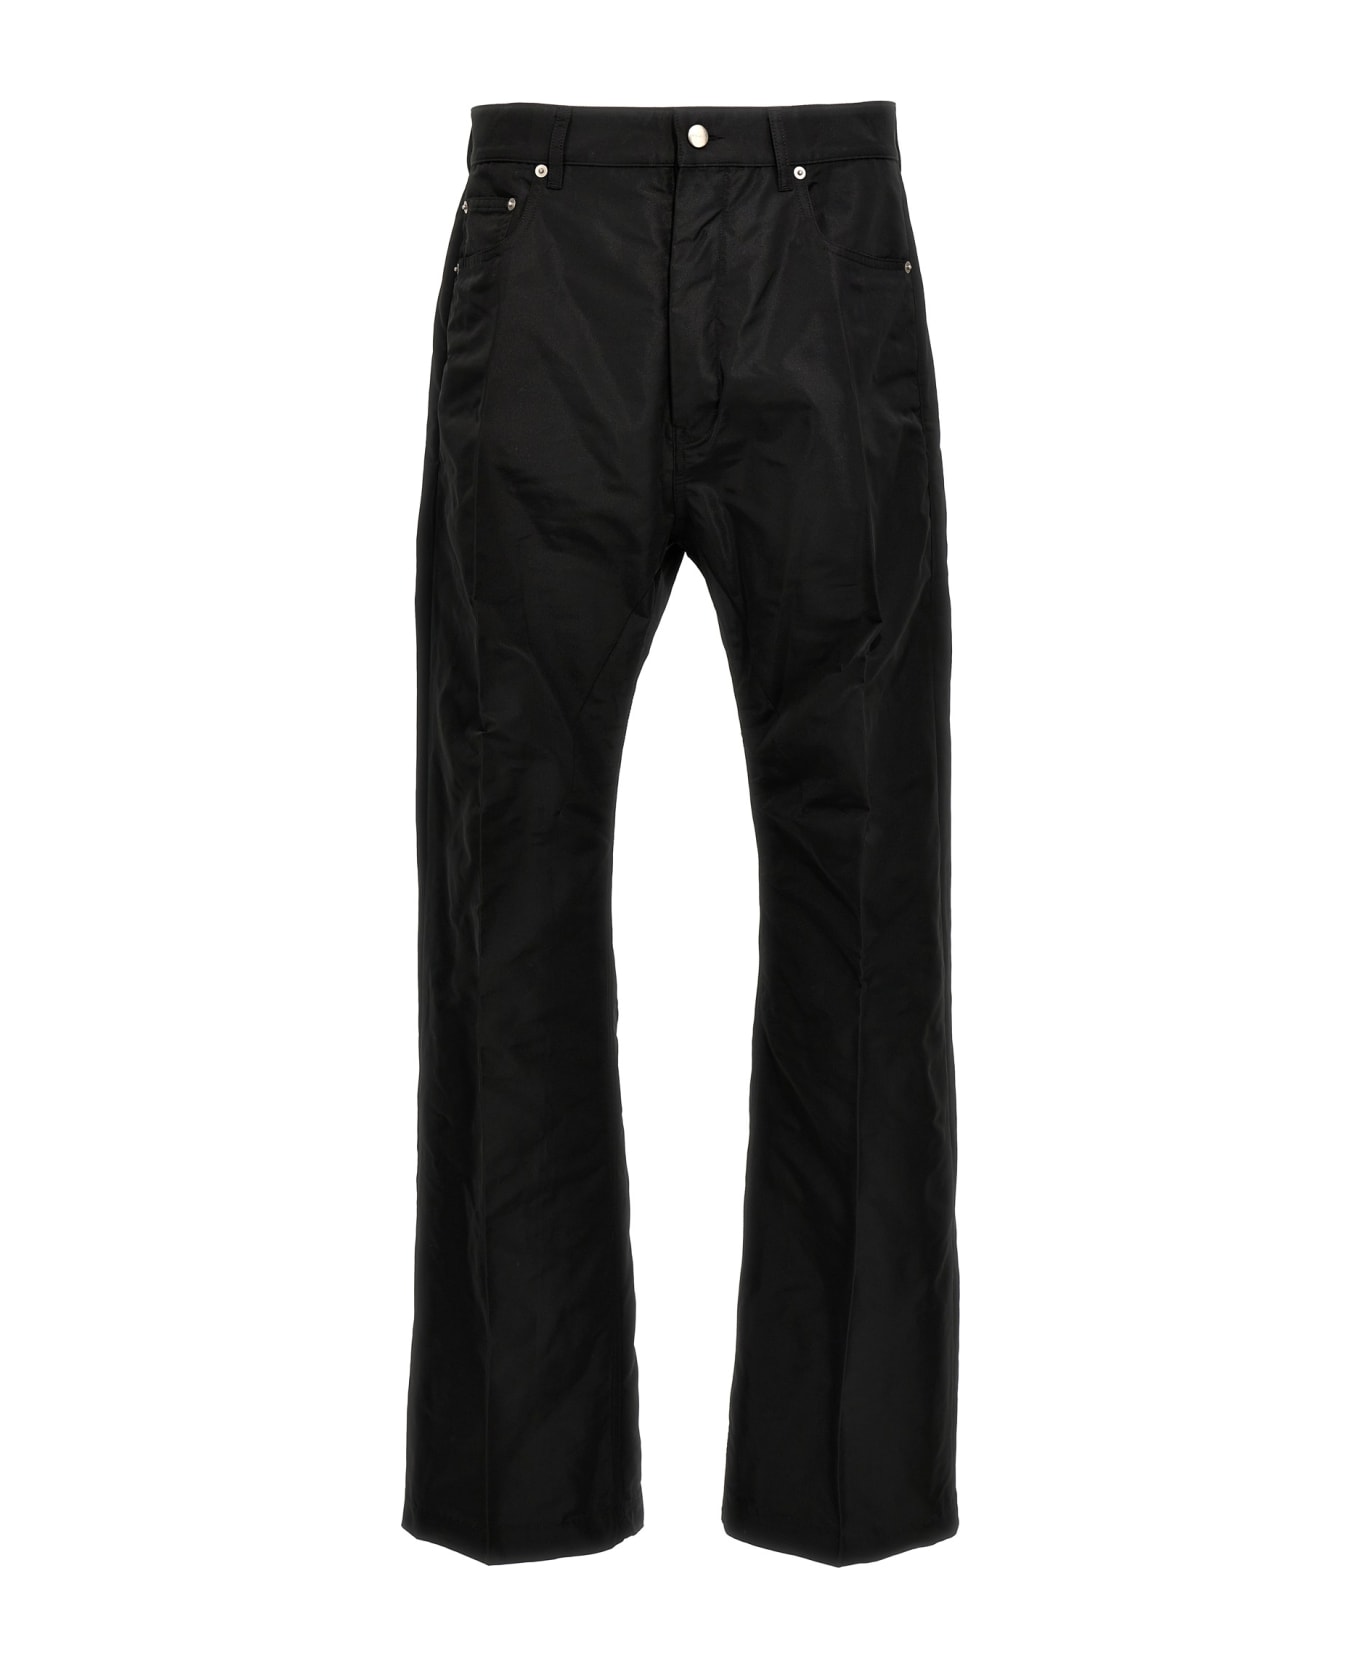 Rick Owens 'geth Jeans' Pants - Black  